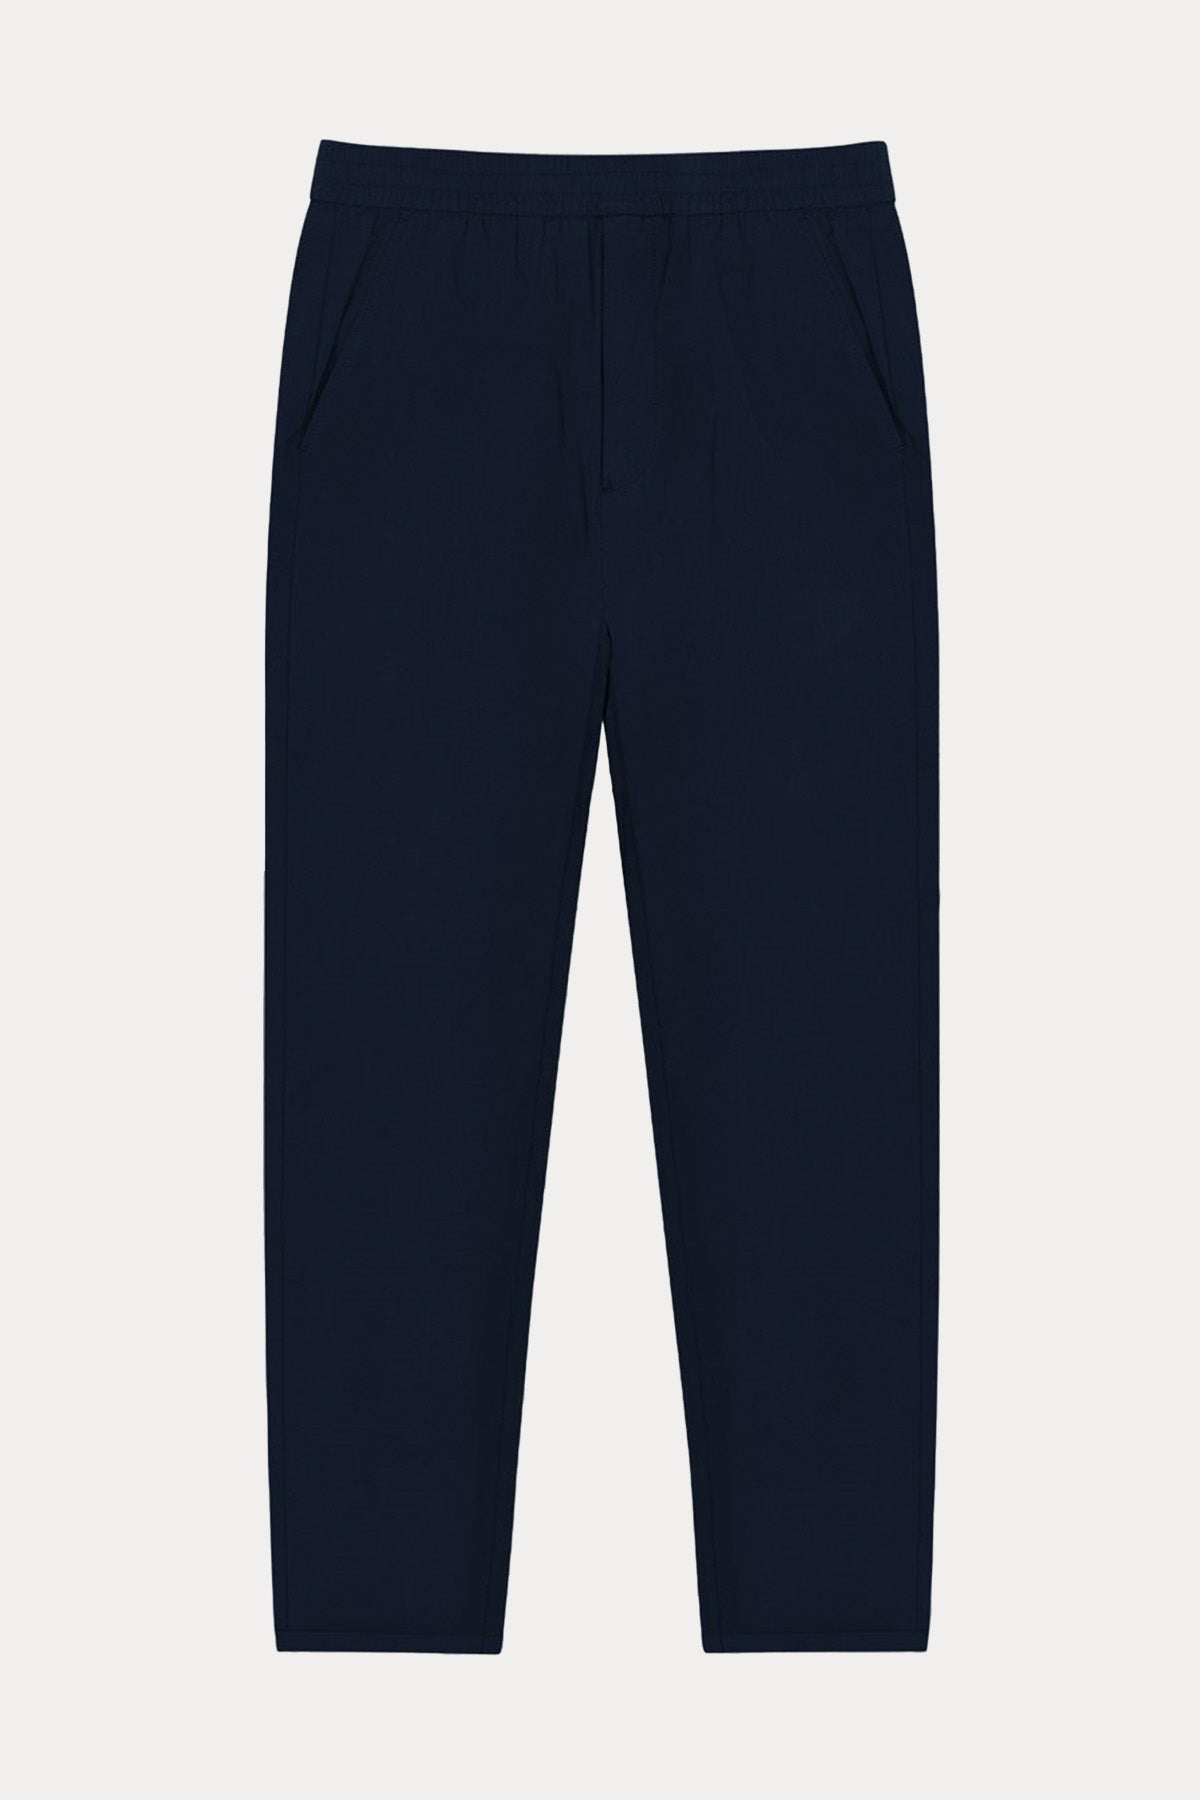 Bluemint Ace Summer Jogger Pantolon-Libas Trendy Fashion Store